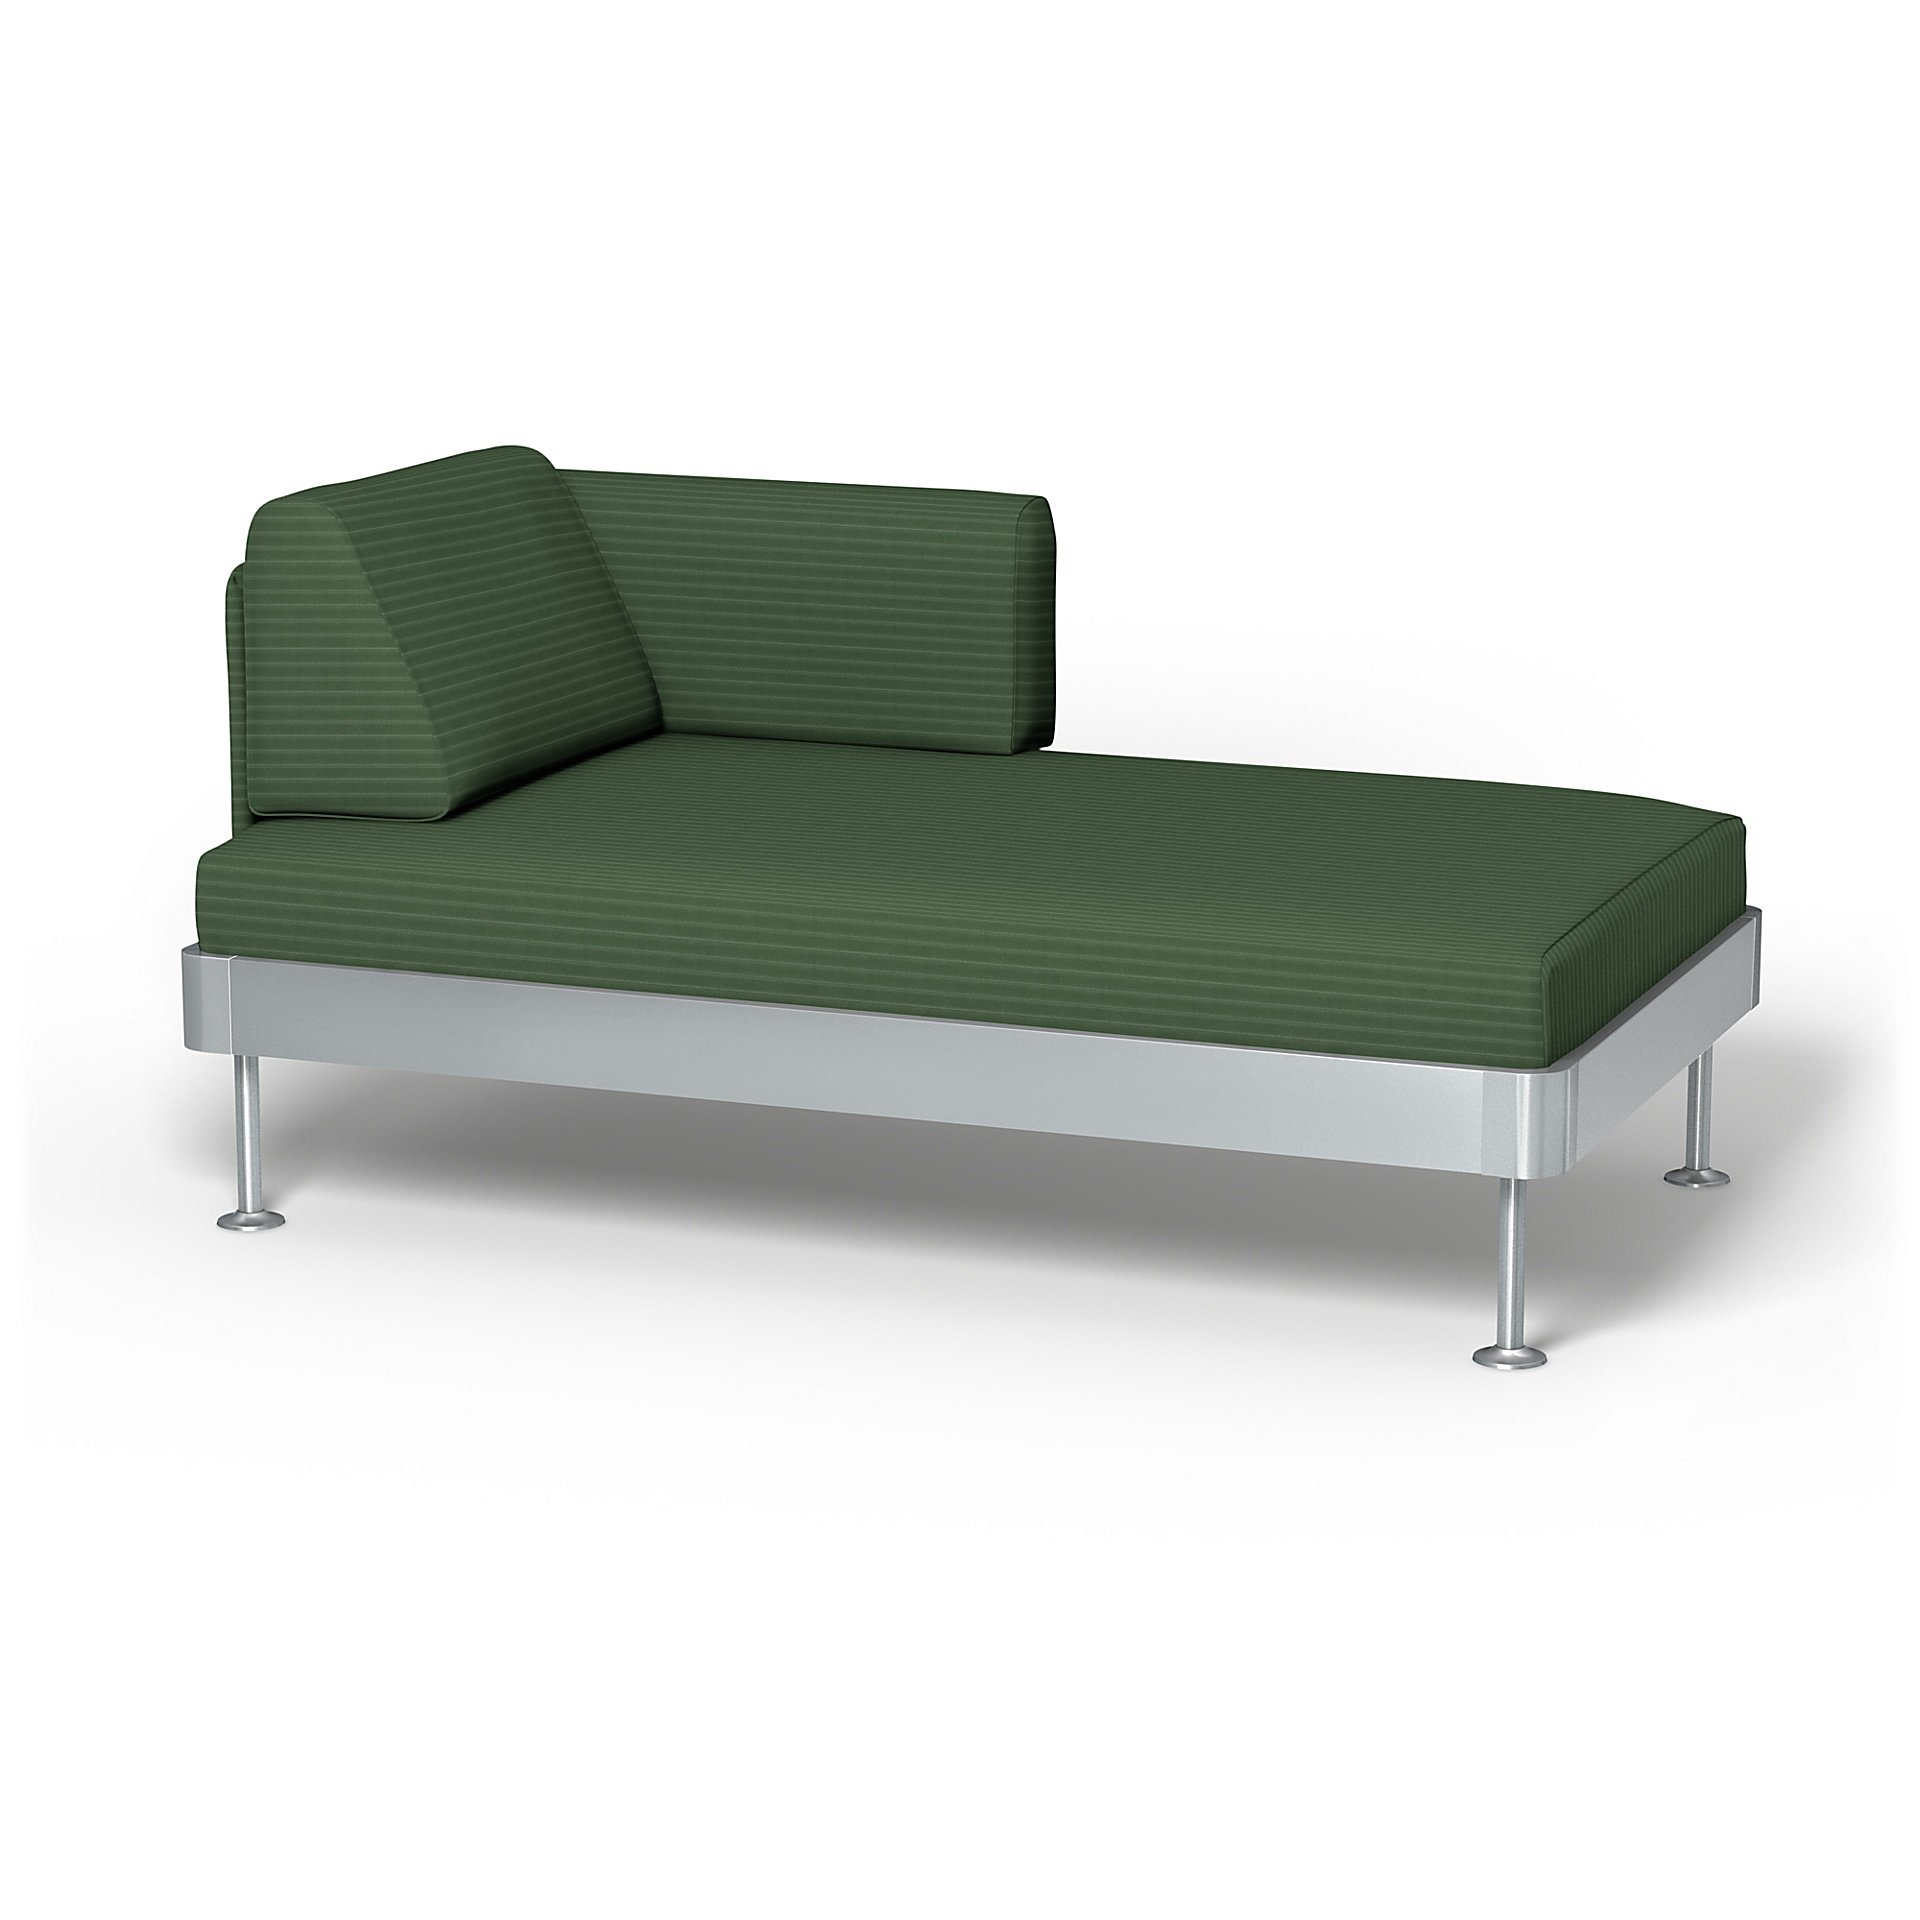 IKEA - Delaktig Chaise Longue Cover, Palm Green, Corduroy - Bemz